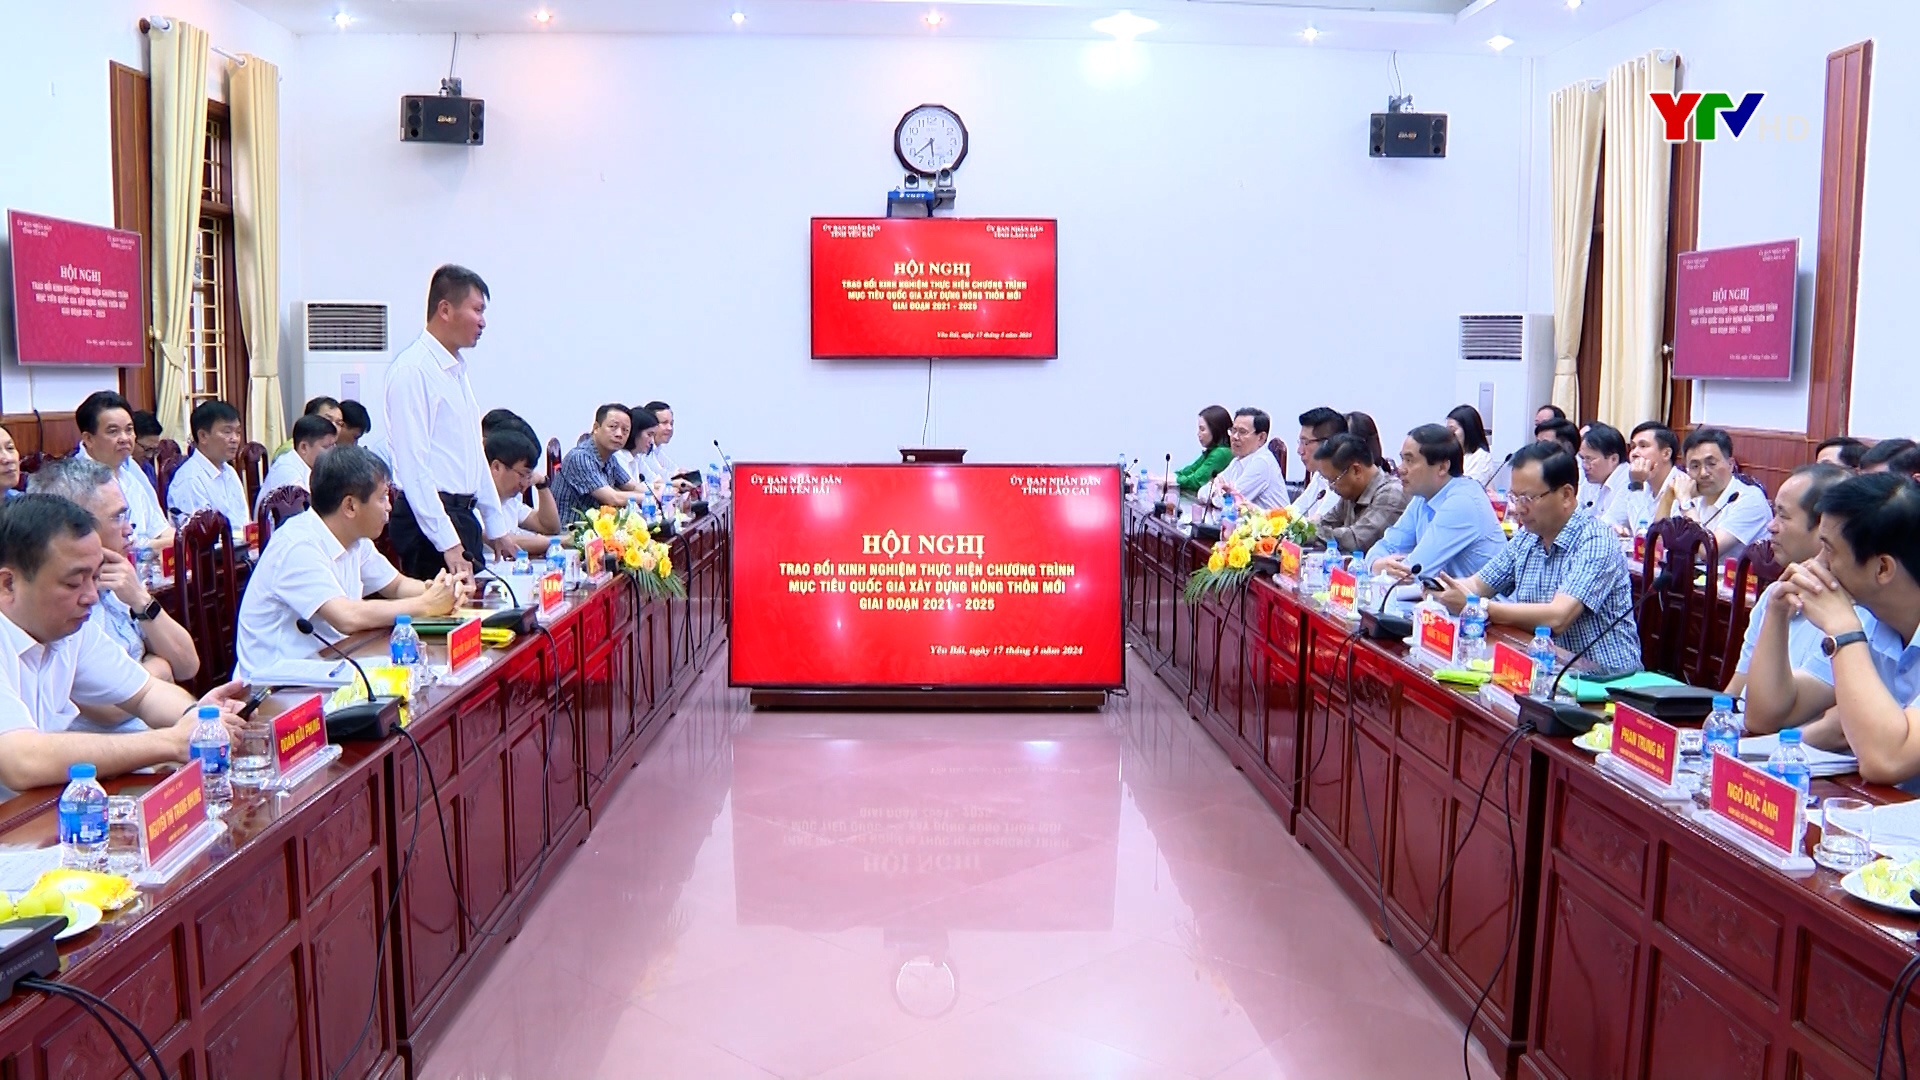 Hai tỉnh Yên Bái - Lào Cai trao đổi kinh nghiệm thực hiện chương trình MTQG xây dựng nông thôn mới, giai đoạn 2021-2025